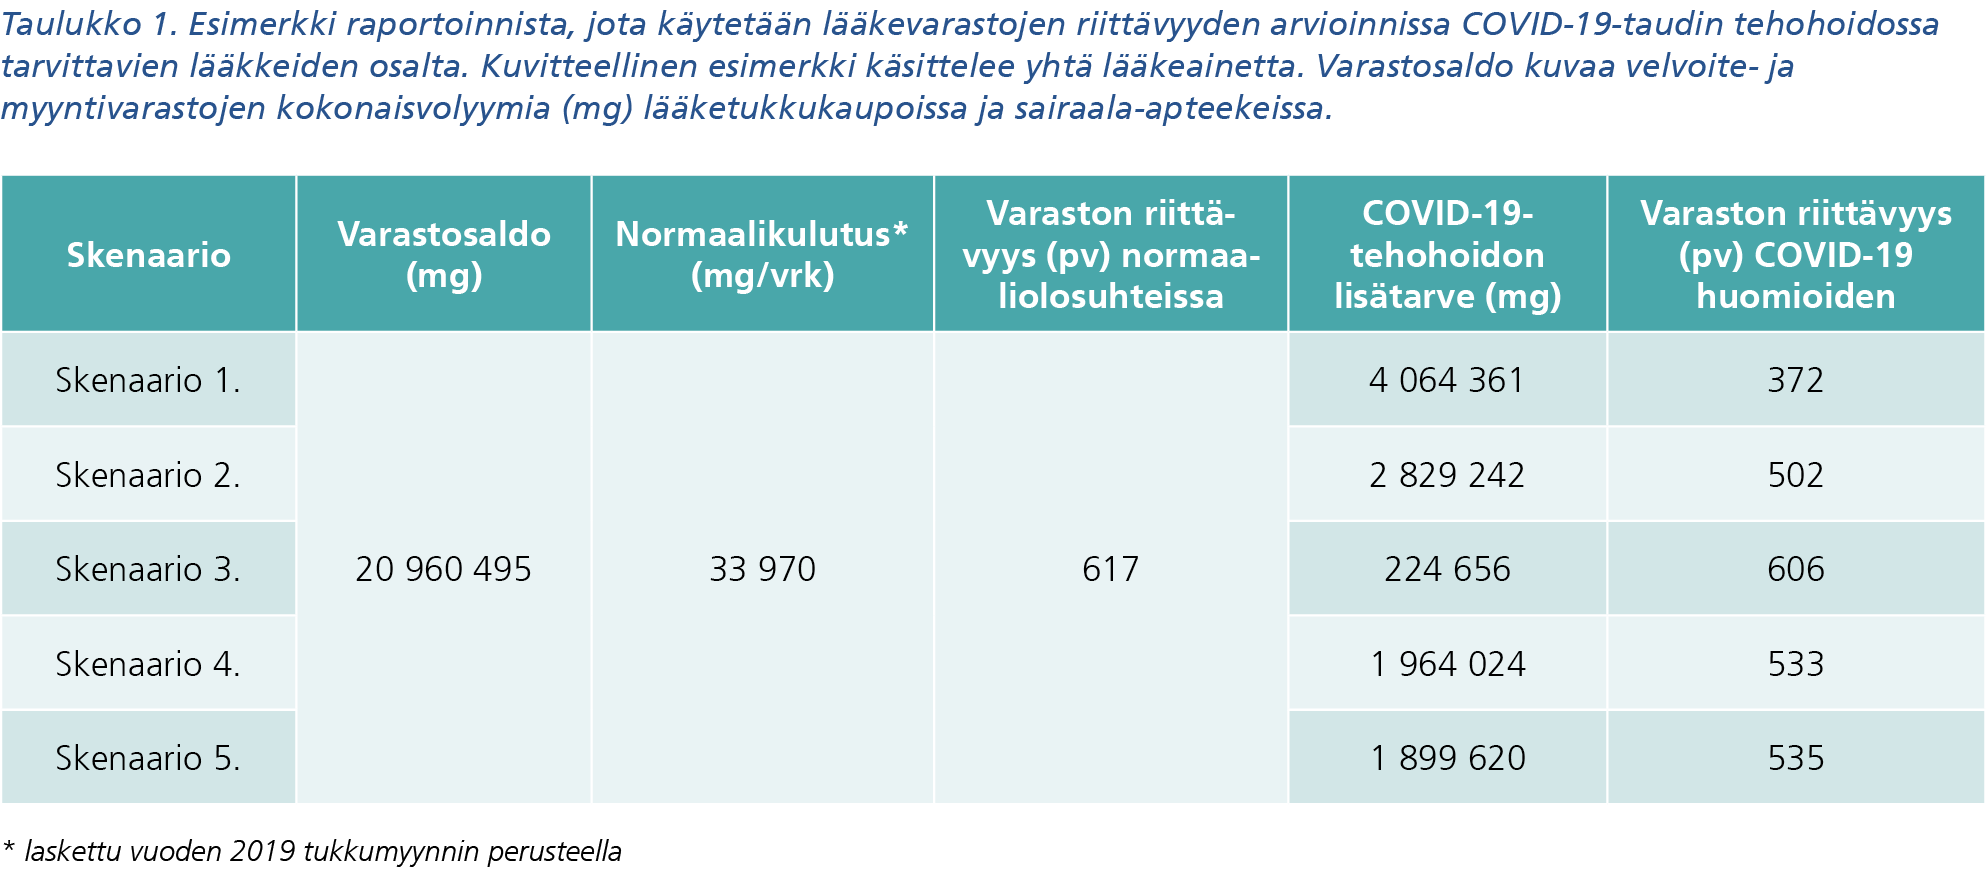 Taulukko 1. Esimerkki raportoinnista jota käytetään lääkevarastojen riittävyyden arvioinnissa covid-19-taudin tehohoidossa tarvittavien lääkkeiden osalta. Kuvion sisältö löytyy saavutettavasta tekstivastineesta.